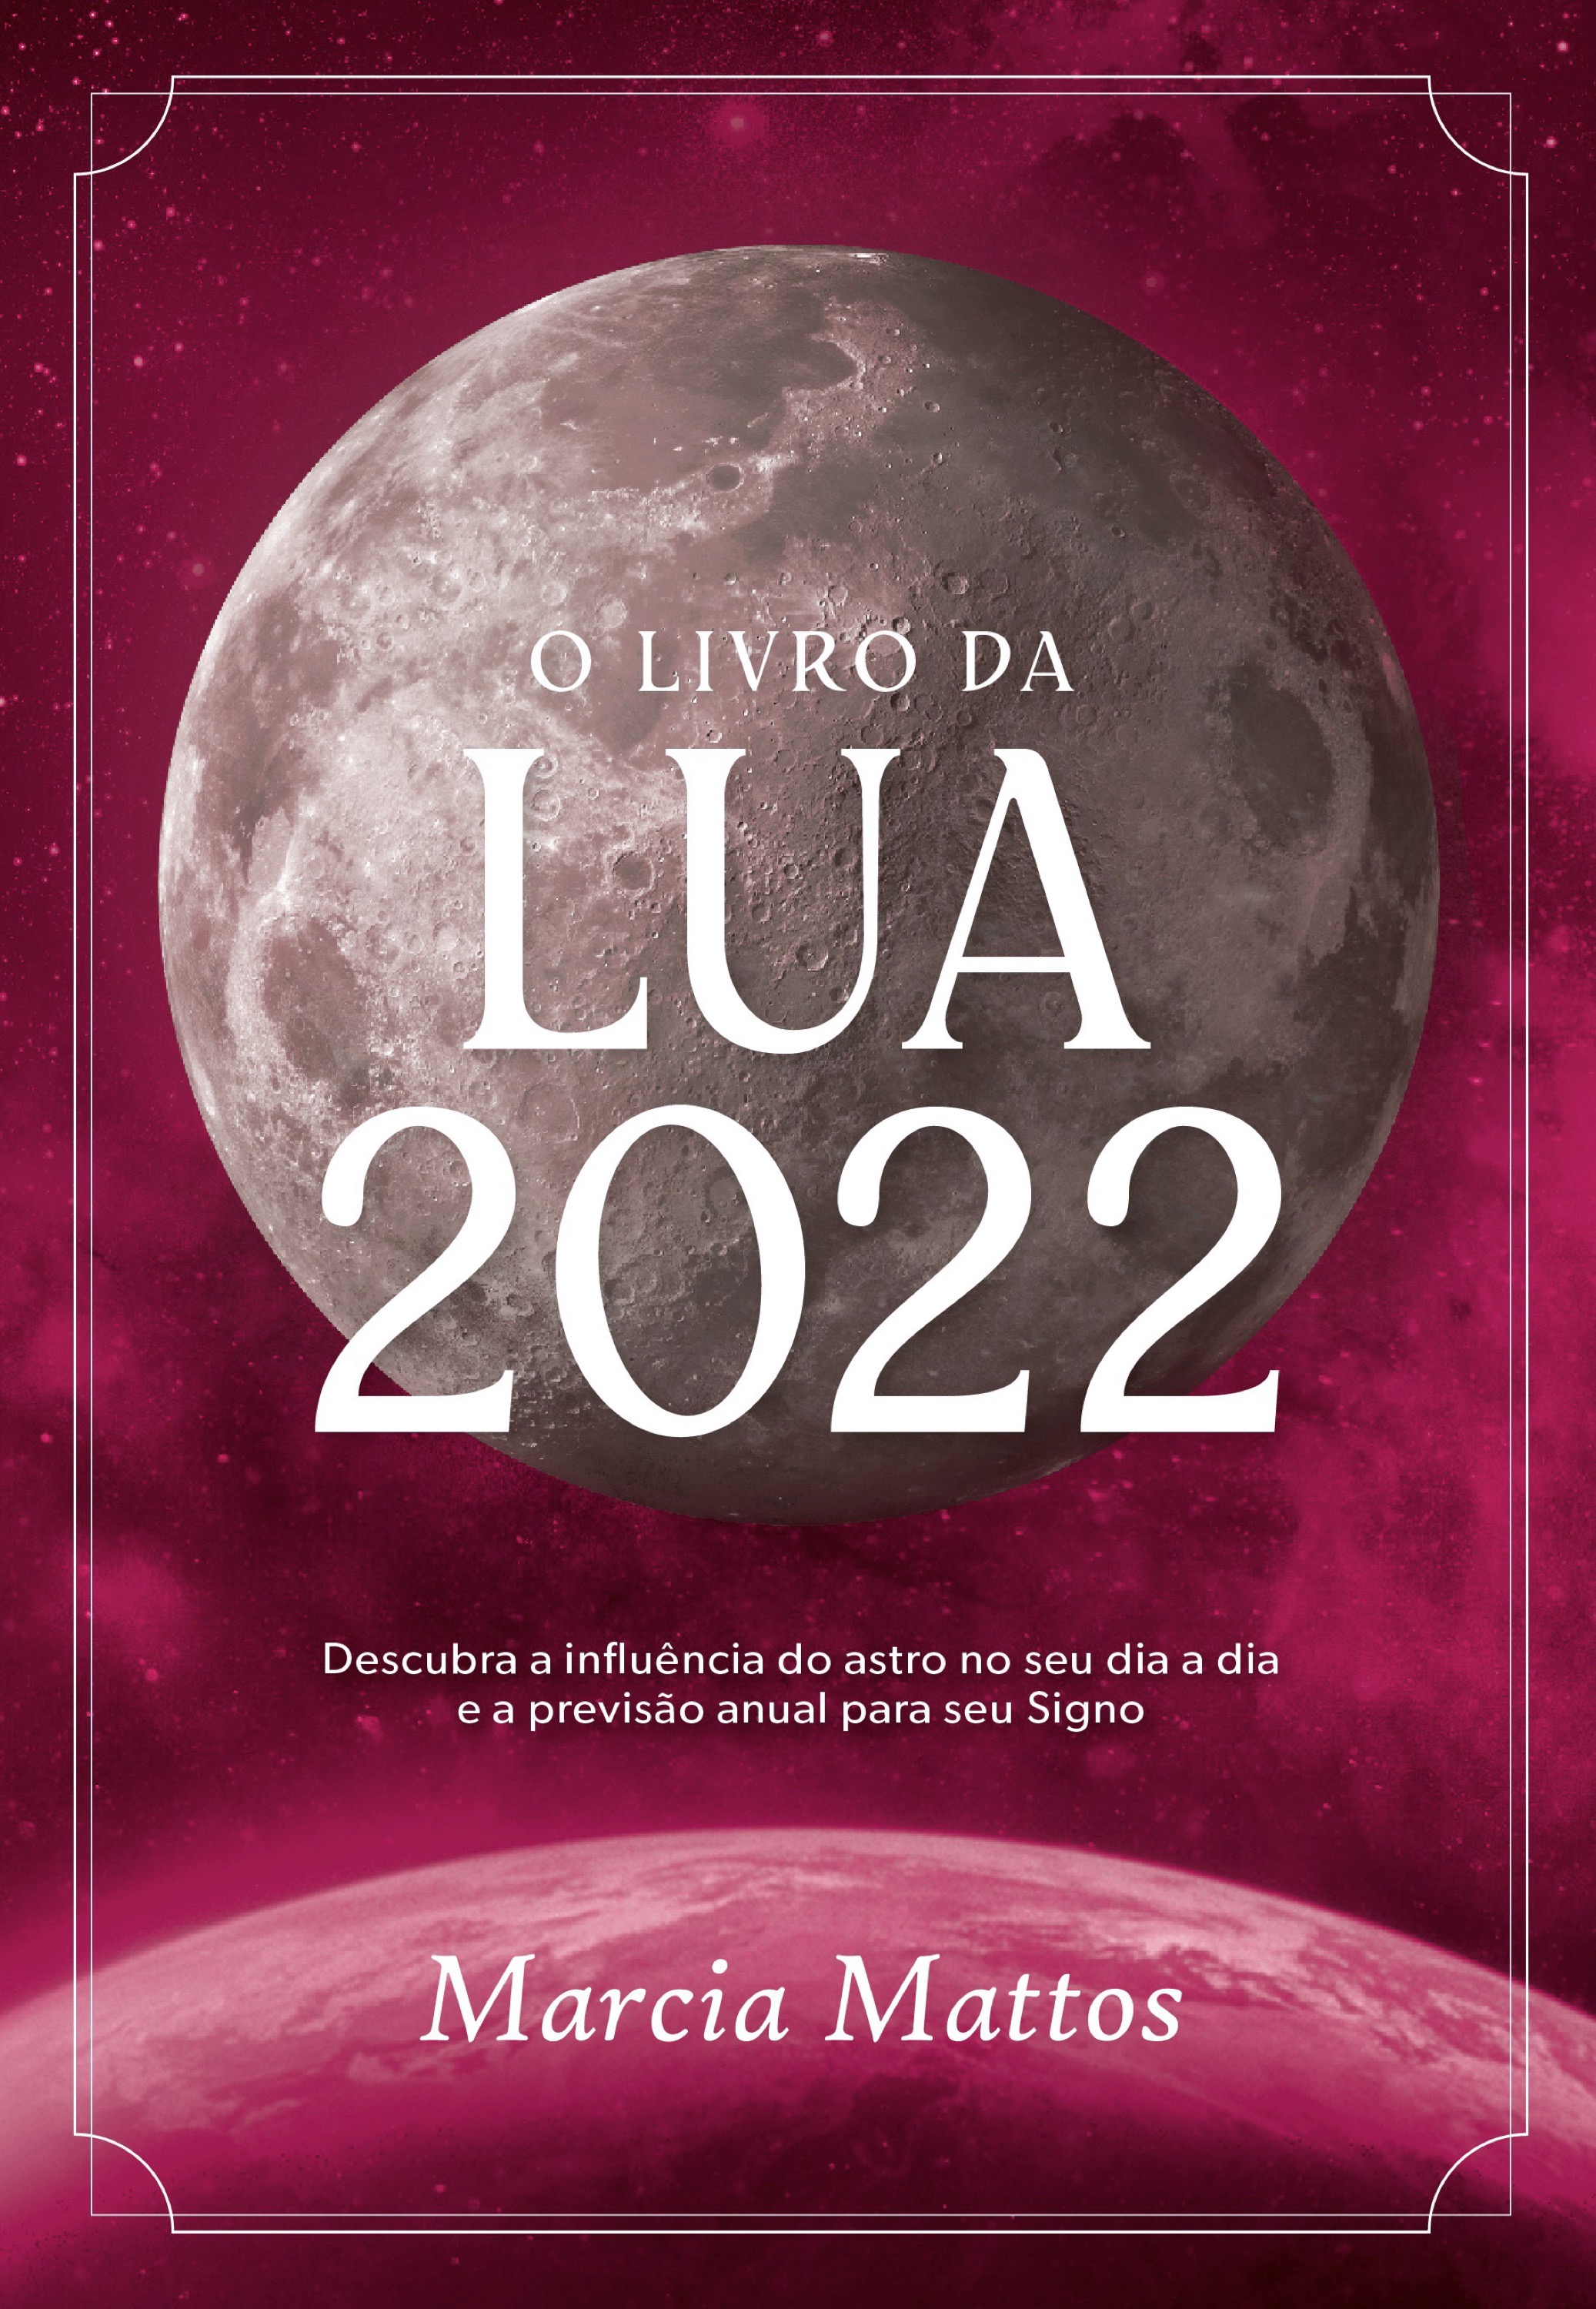 O livro da Lua 2022